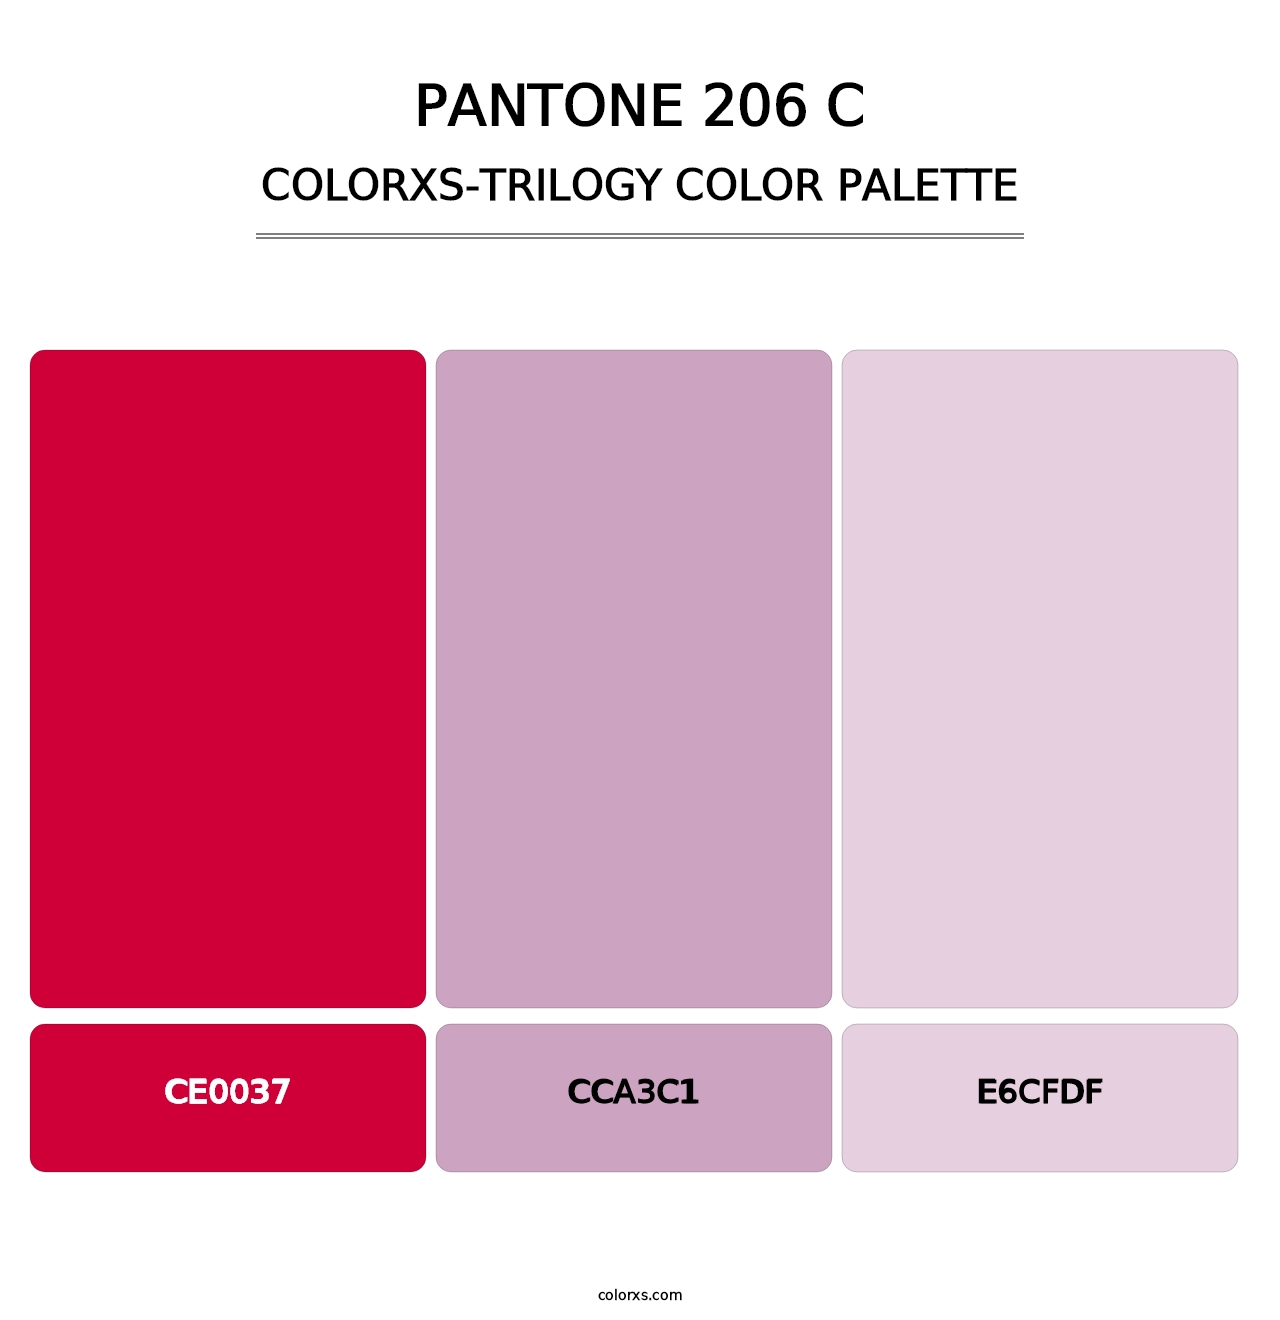 PANTONE 206 C - Colorxs Trilogy Palette